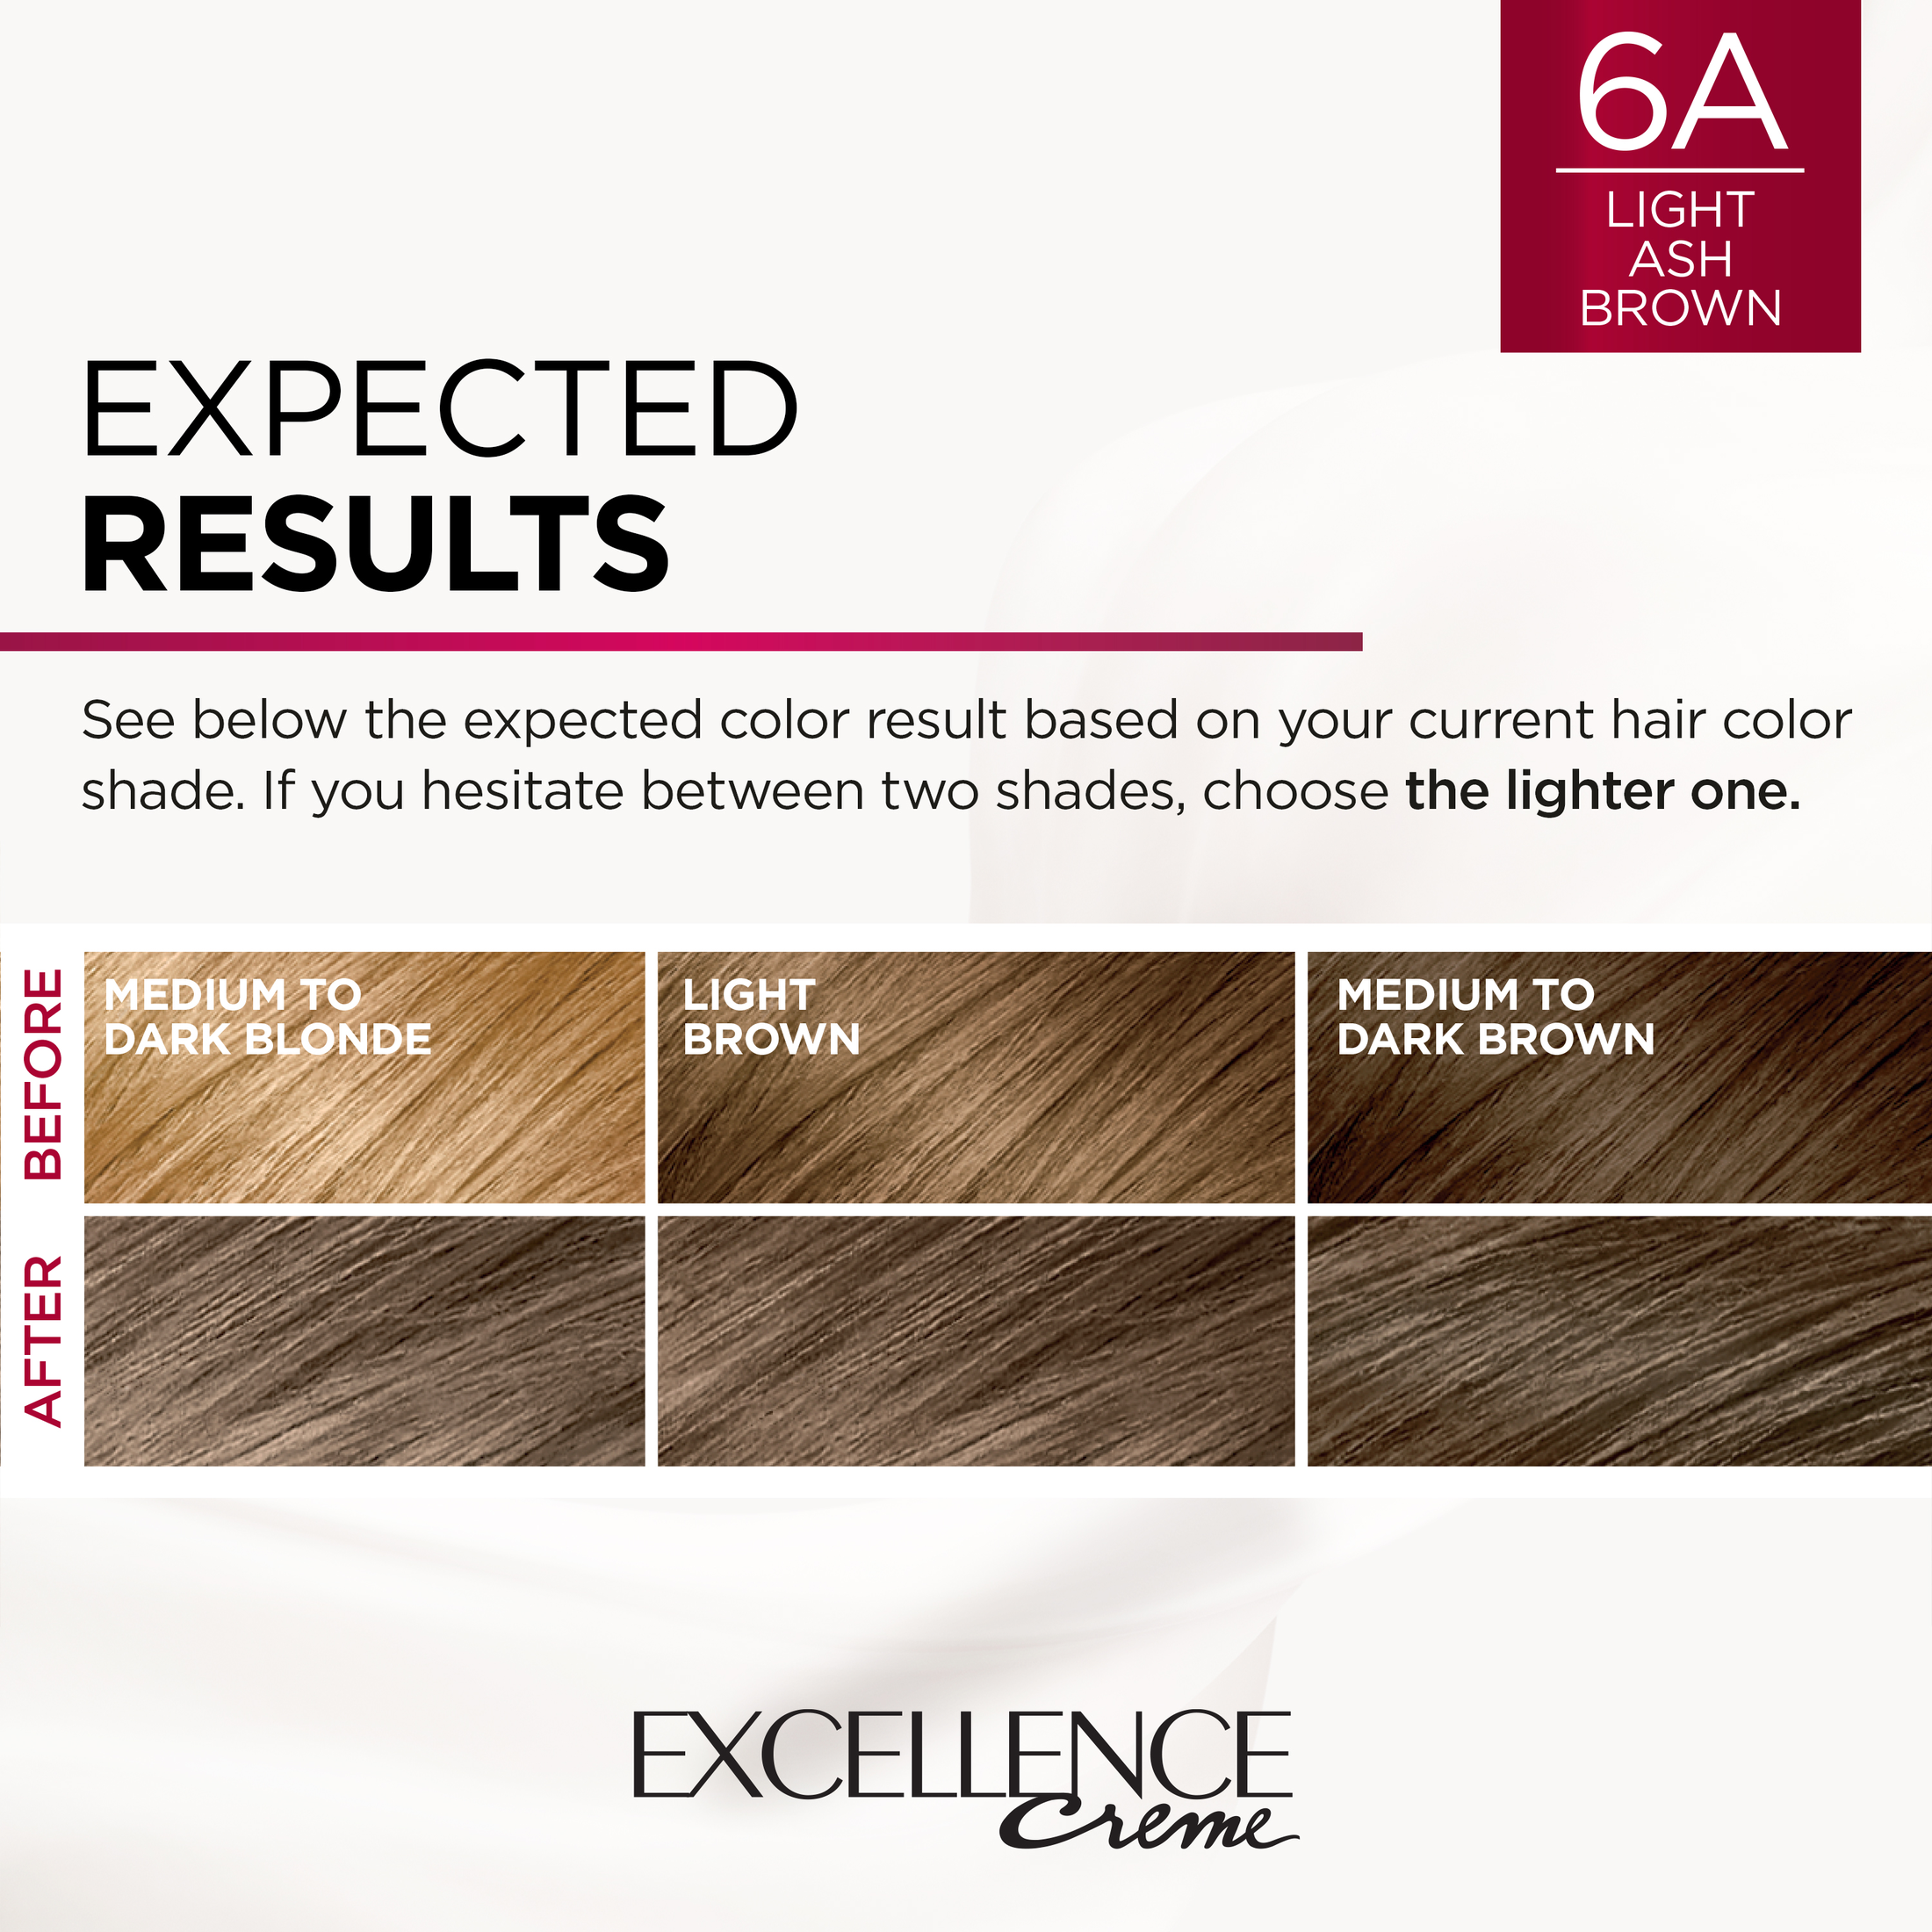 L'Oreal Paris Excellence Creme Permanent Hair Color, 6A Light Ash Brown - image 5 of 8